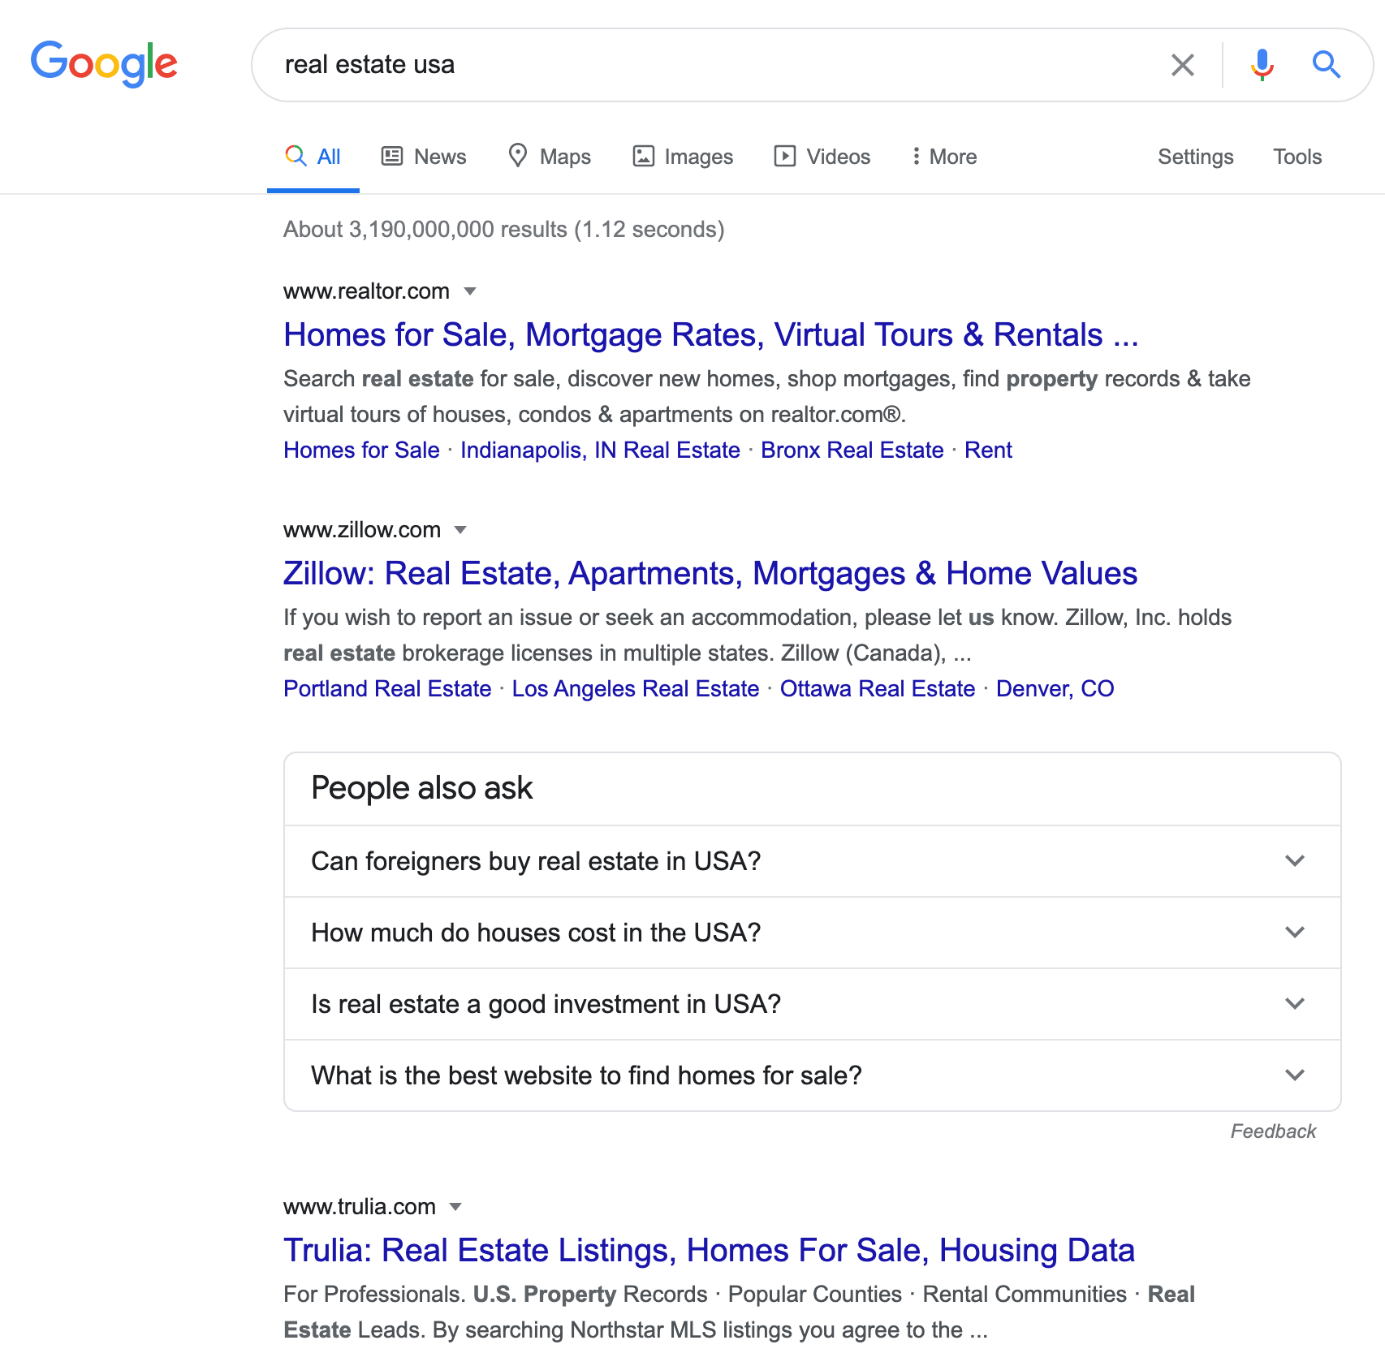 SERP de la búsqueda 'real estate usa' en Google